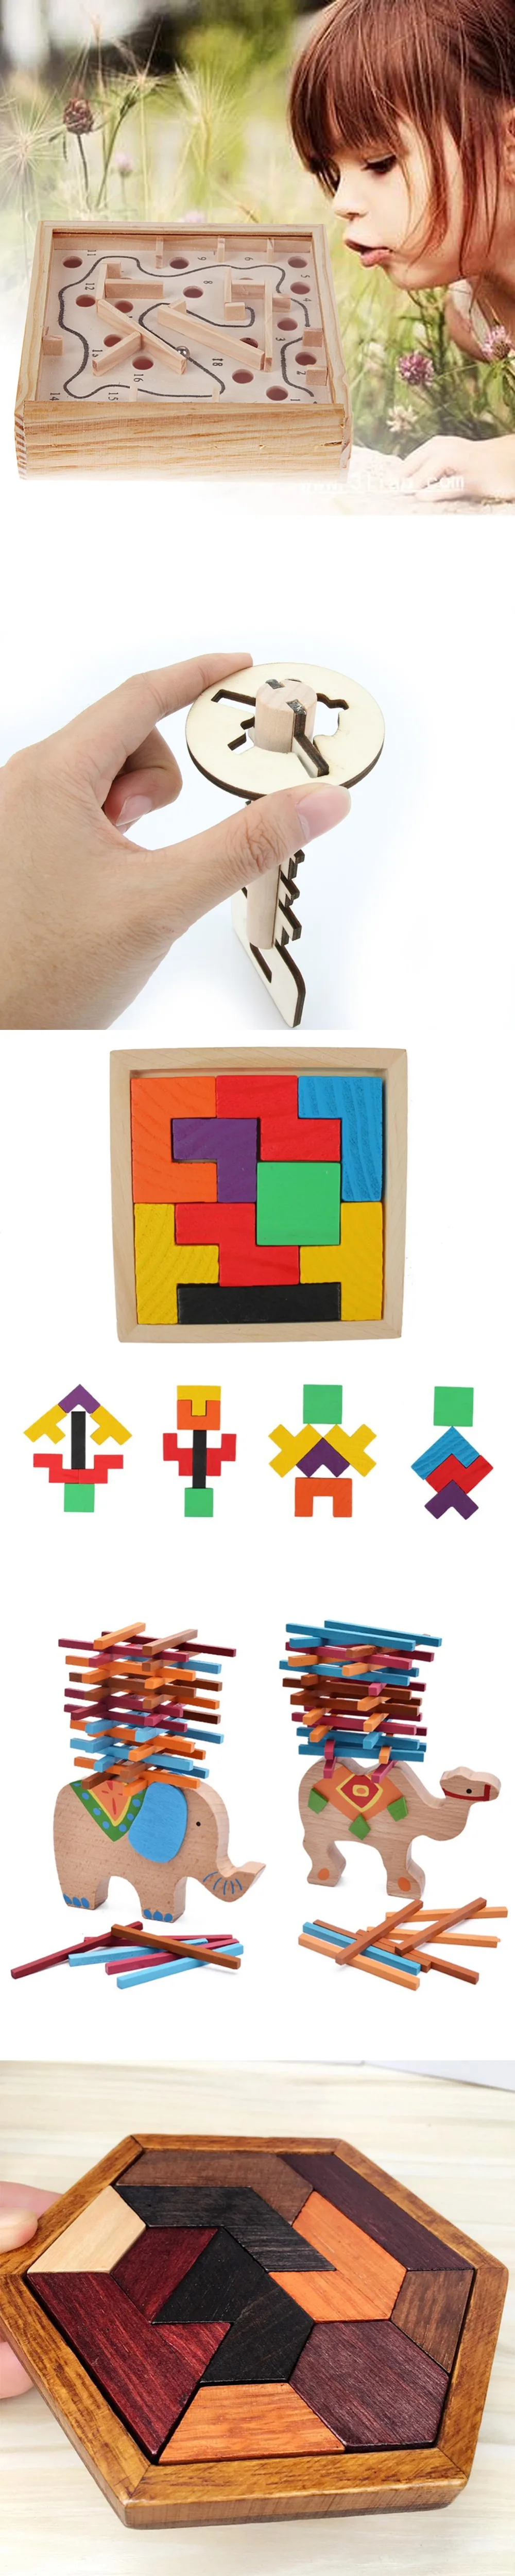 Мульти Стили деревянные головоломки Tangram красочные квадрат IQ игра головоломка для развития интеллекта, образовательные Забавные игрушки